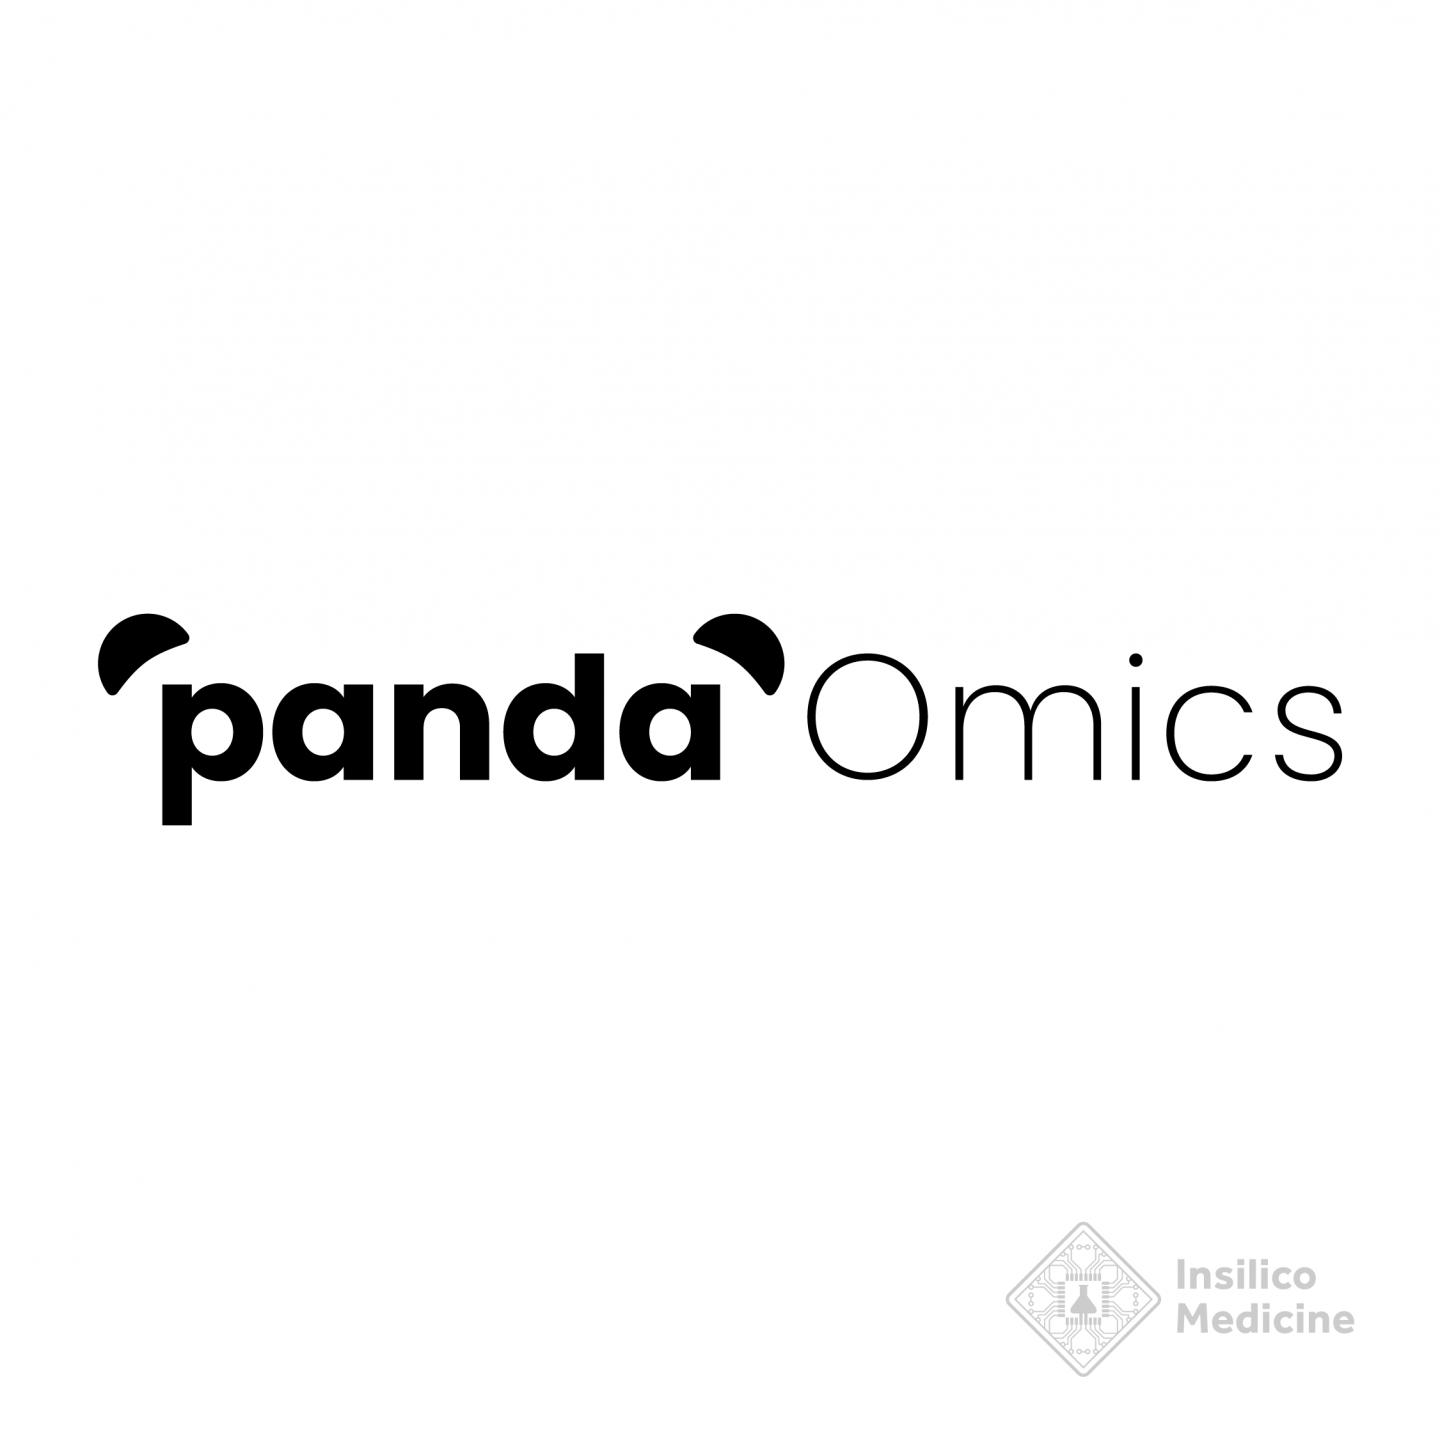 Insilico Medicine rebrands Pandomics as PandaOmics